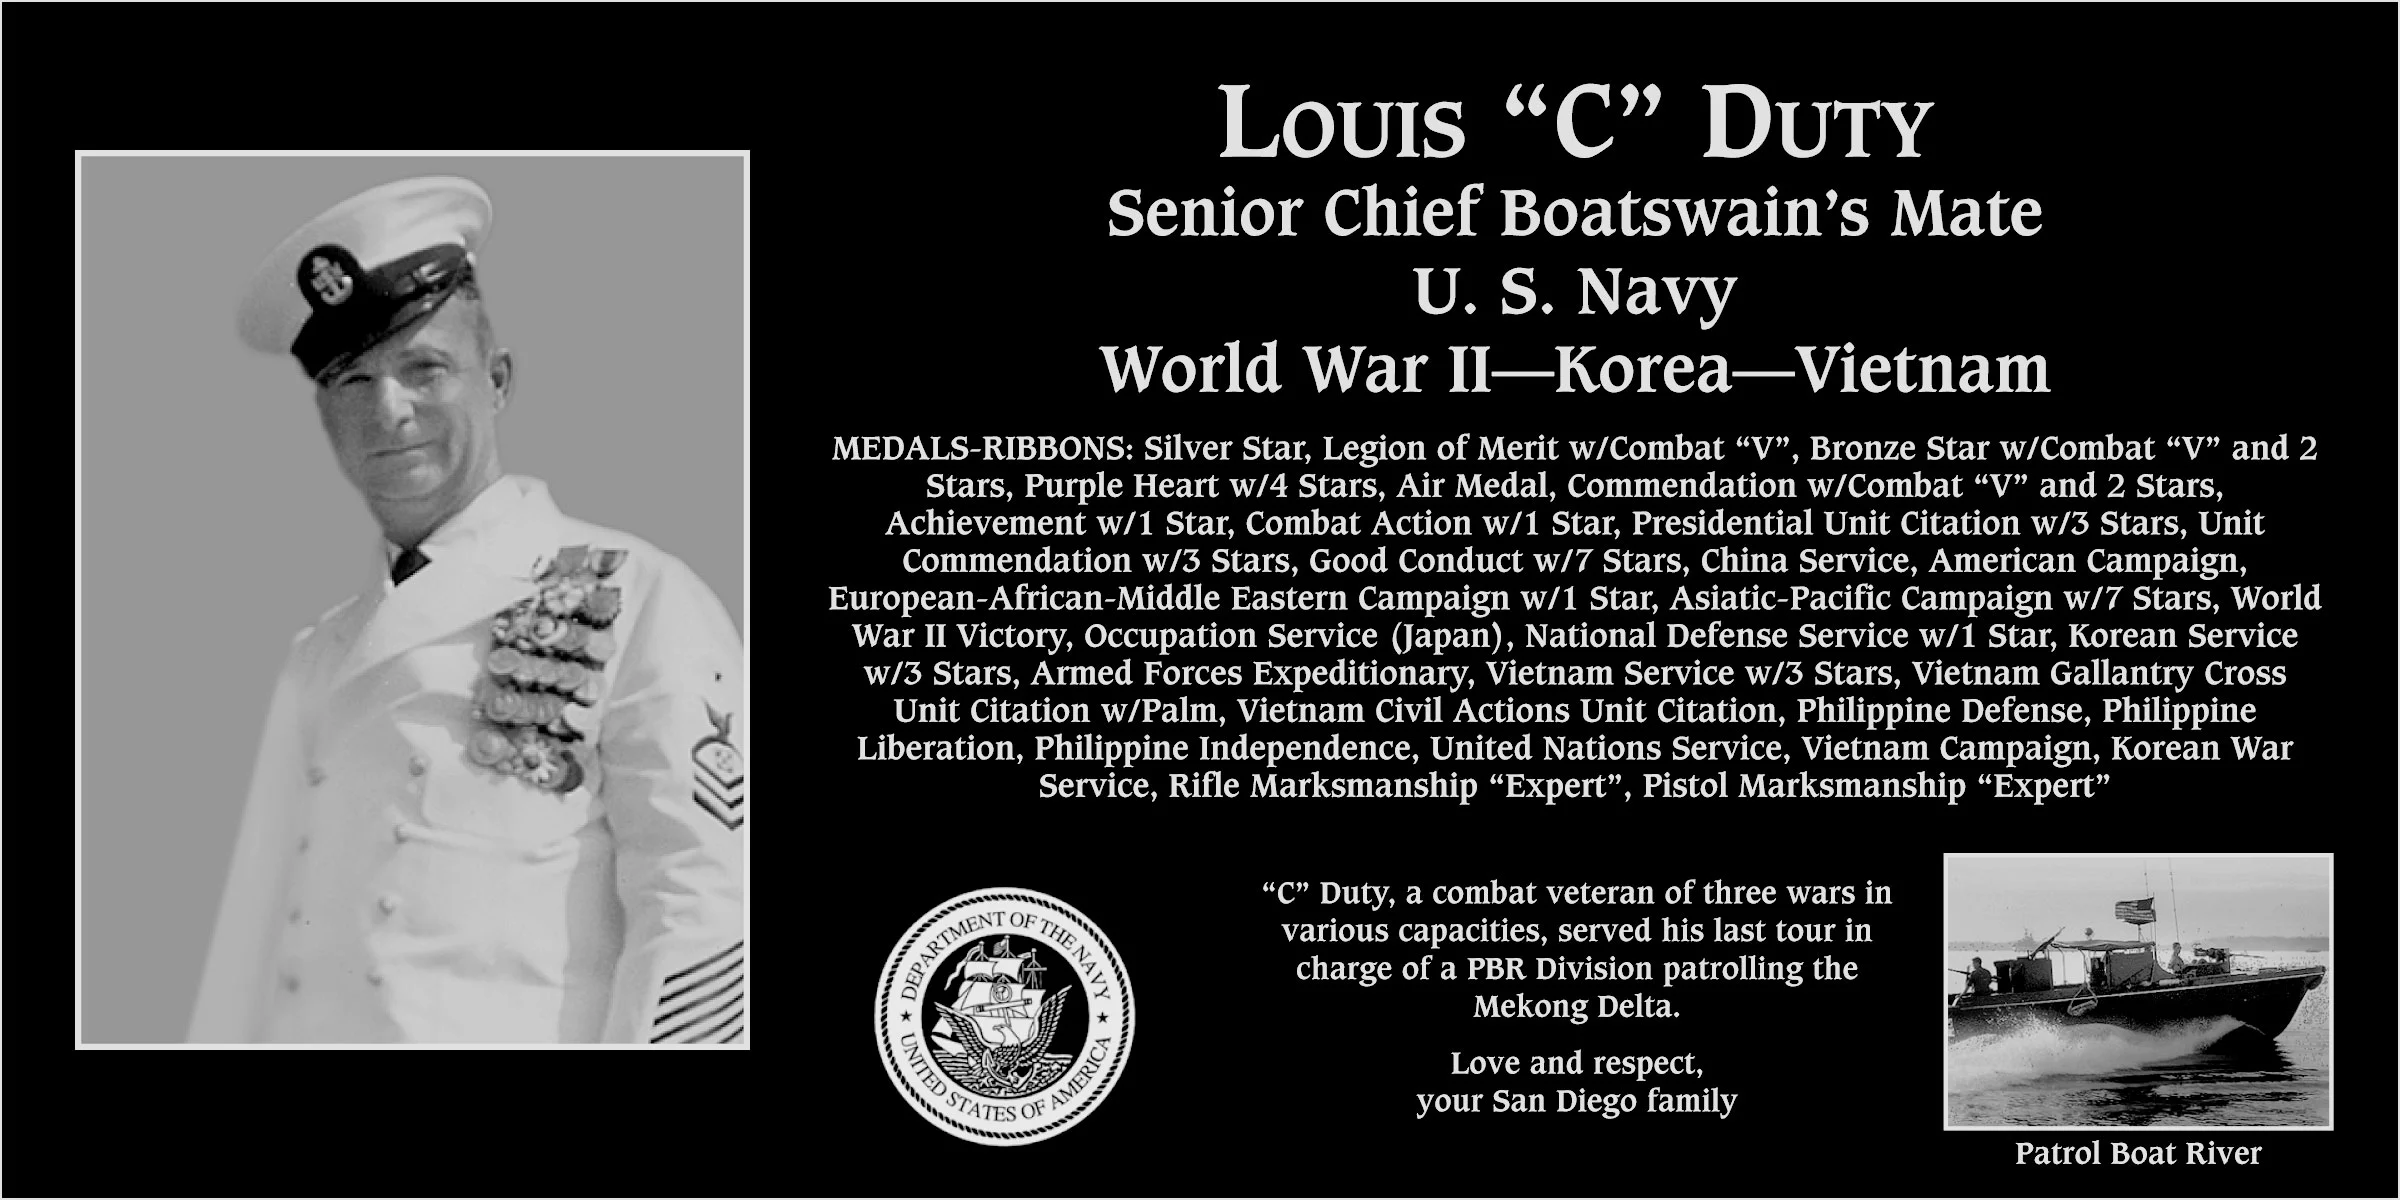 Louis “C” Duty